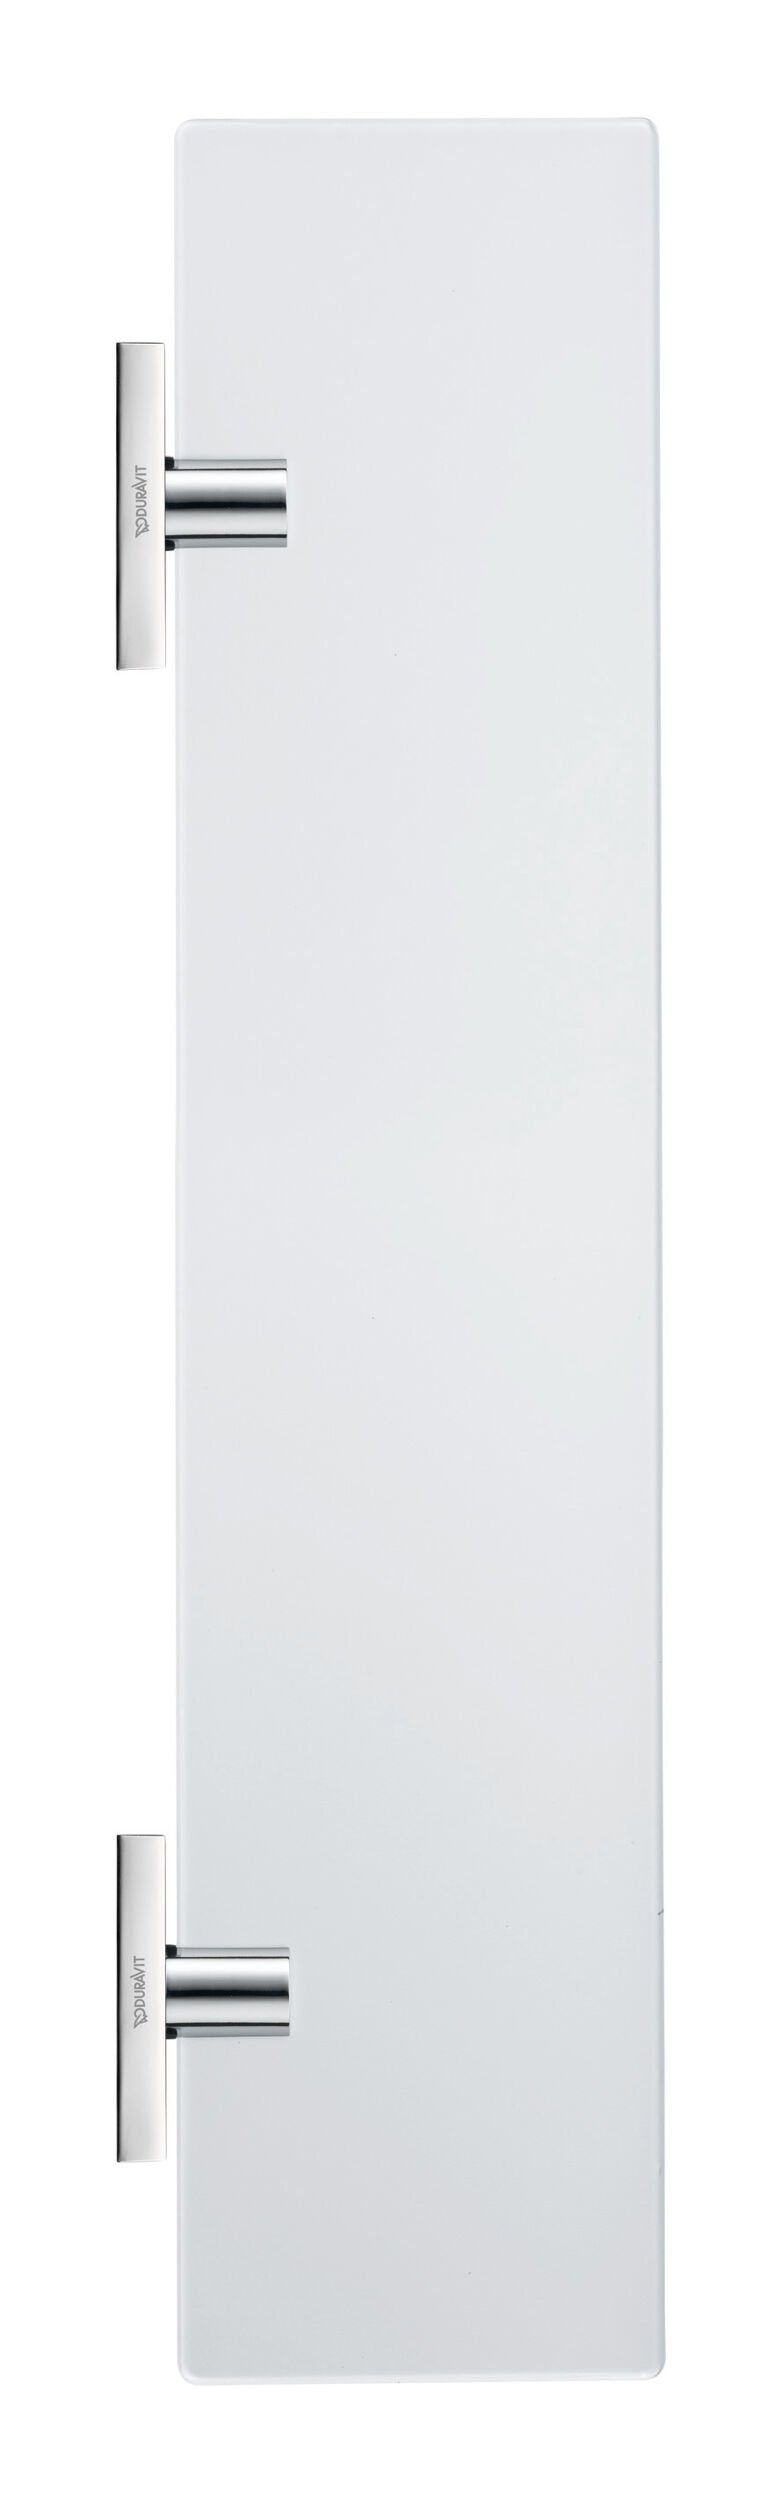 Duravit Ablageelement Karree, Glasablage 600 x 112 mm - Glas Matt/Chrom